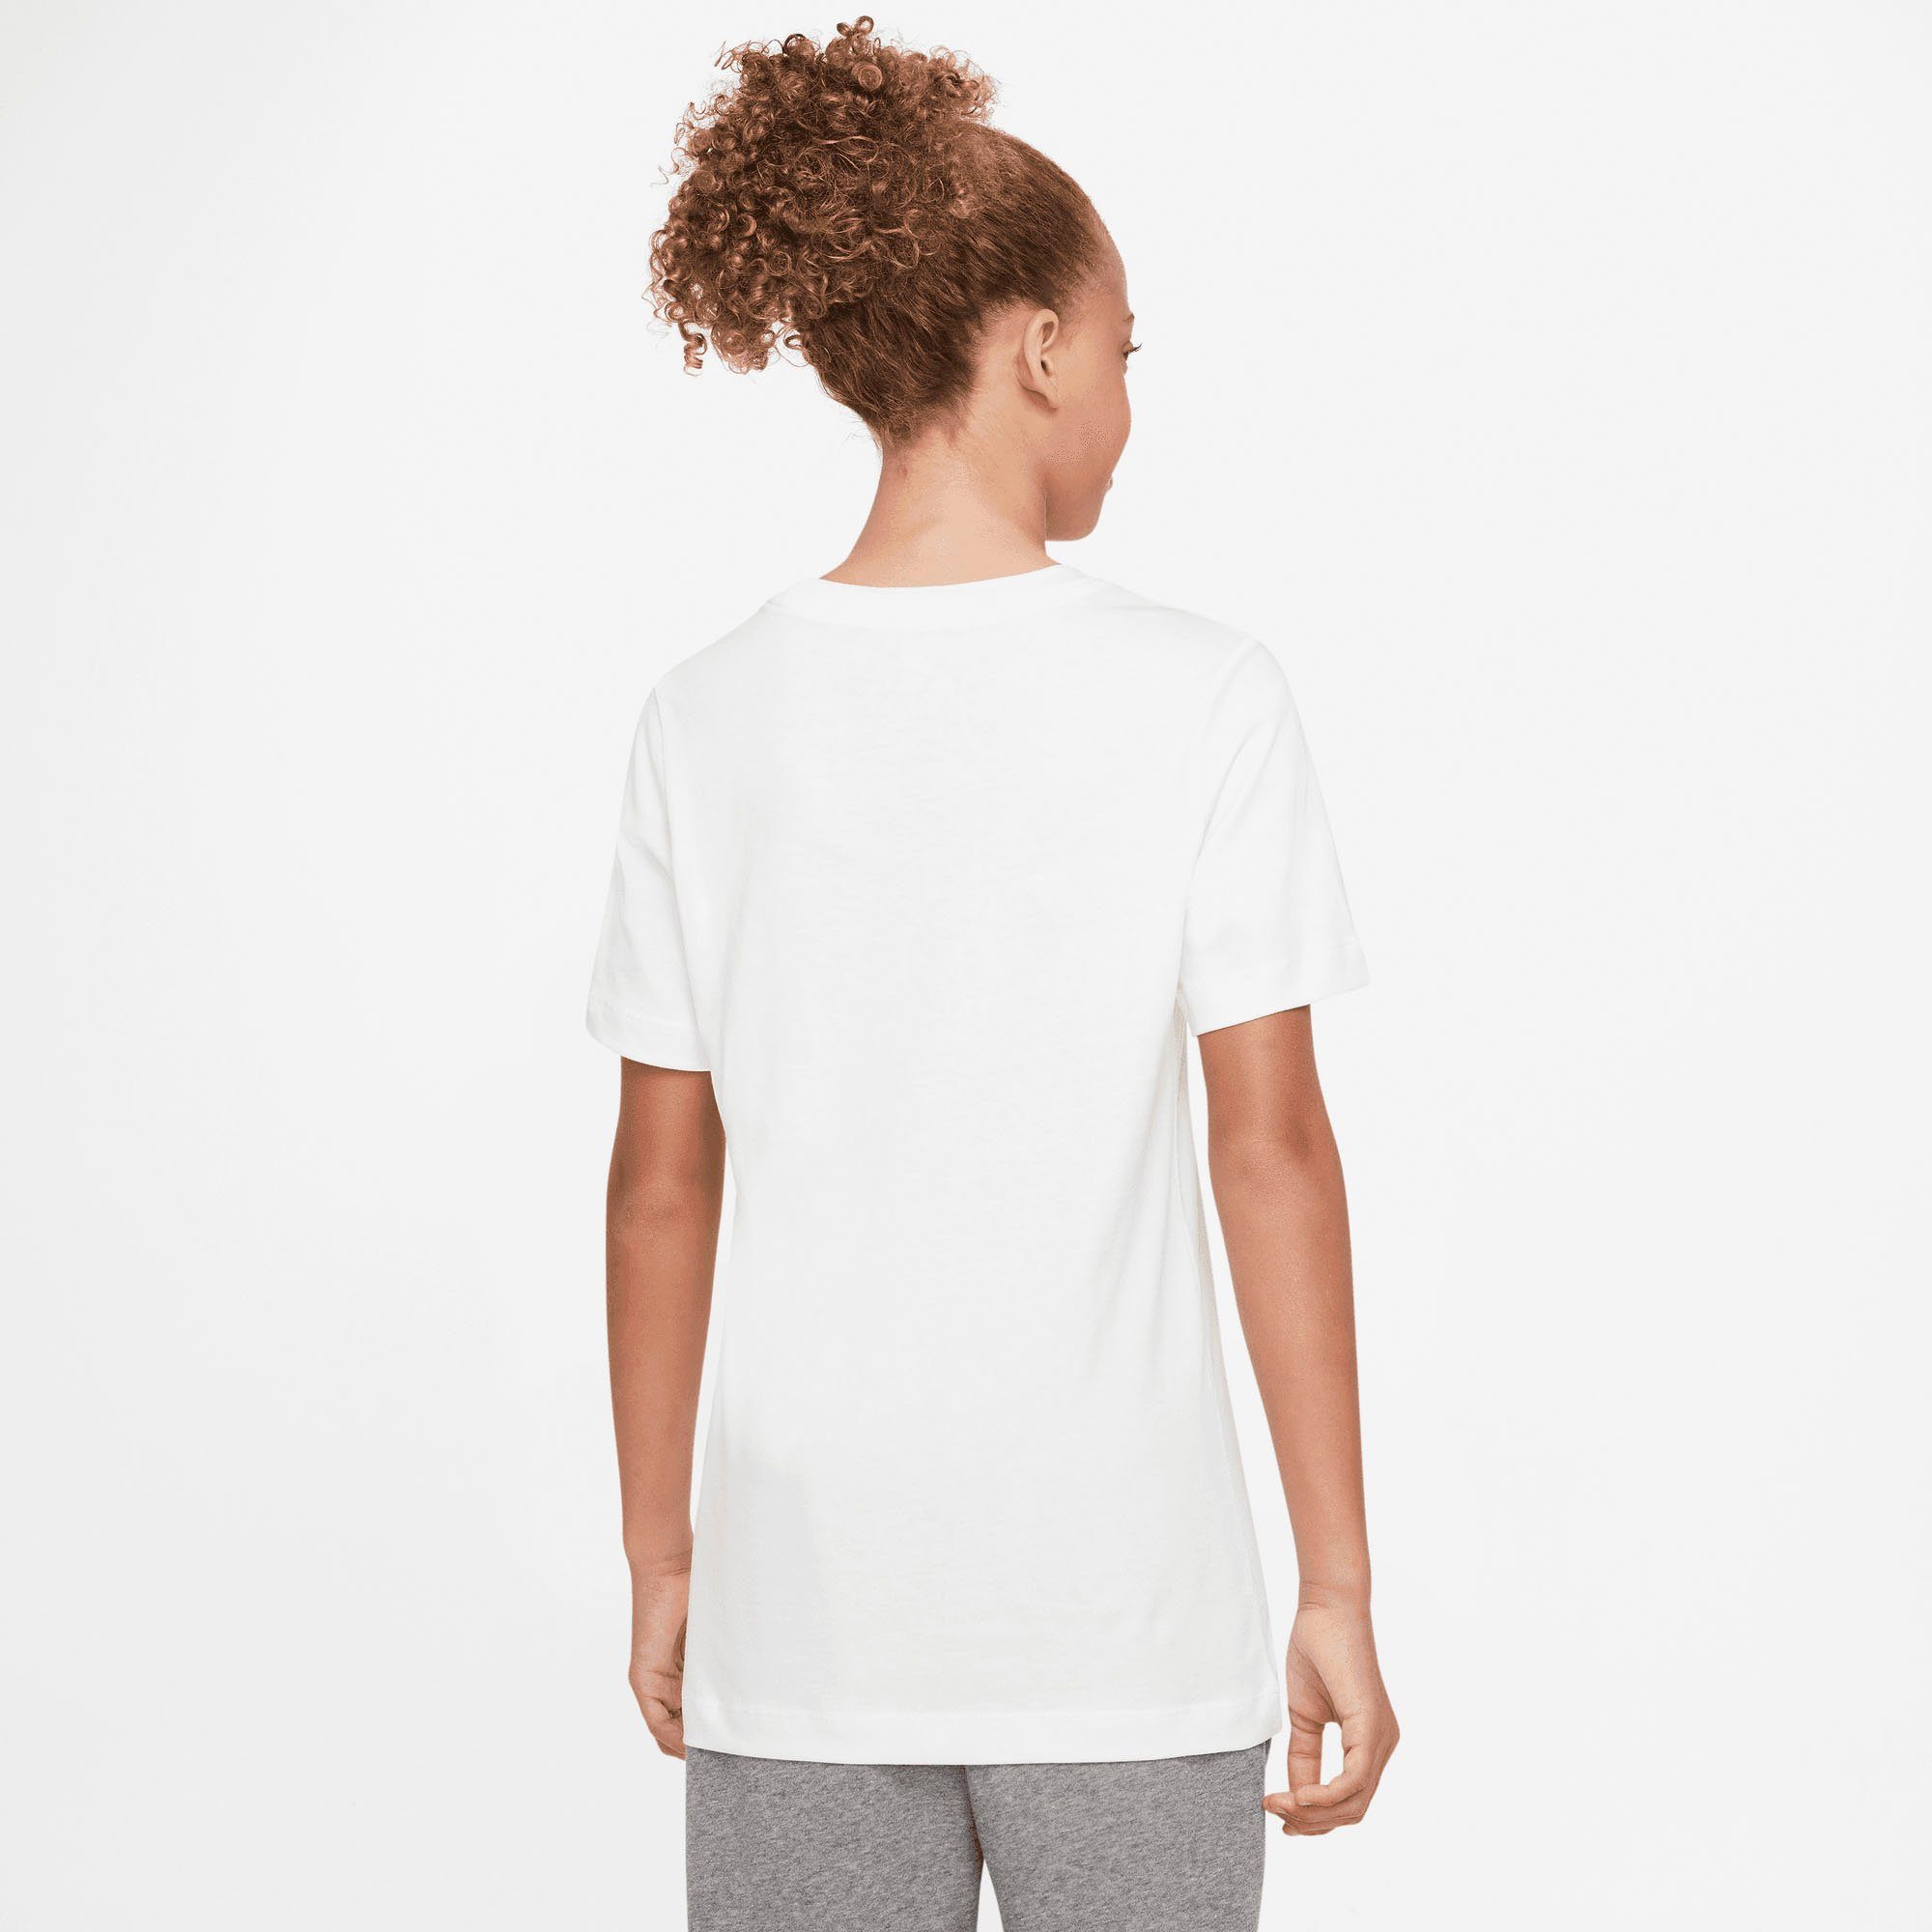 Nike Sportswear T-Shirt Big weiß Kids' T-Shirt